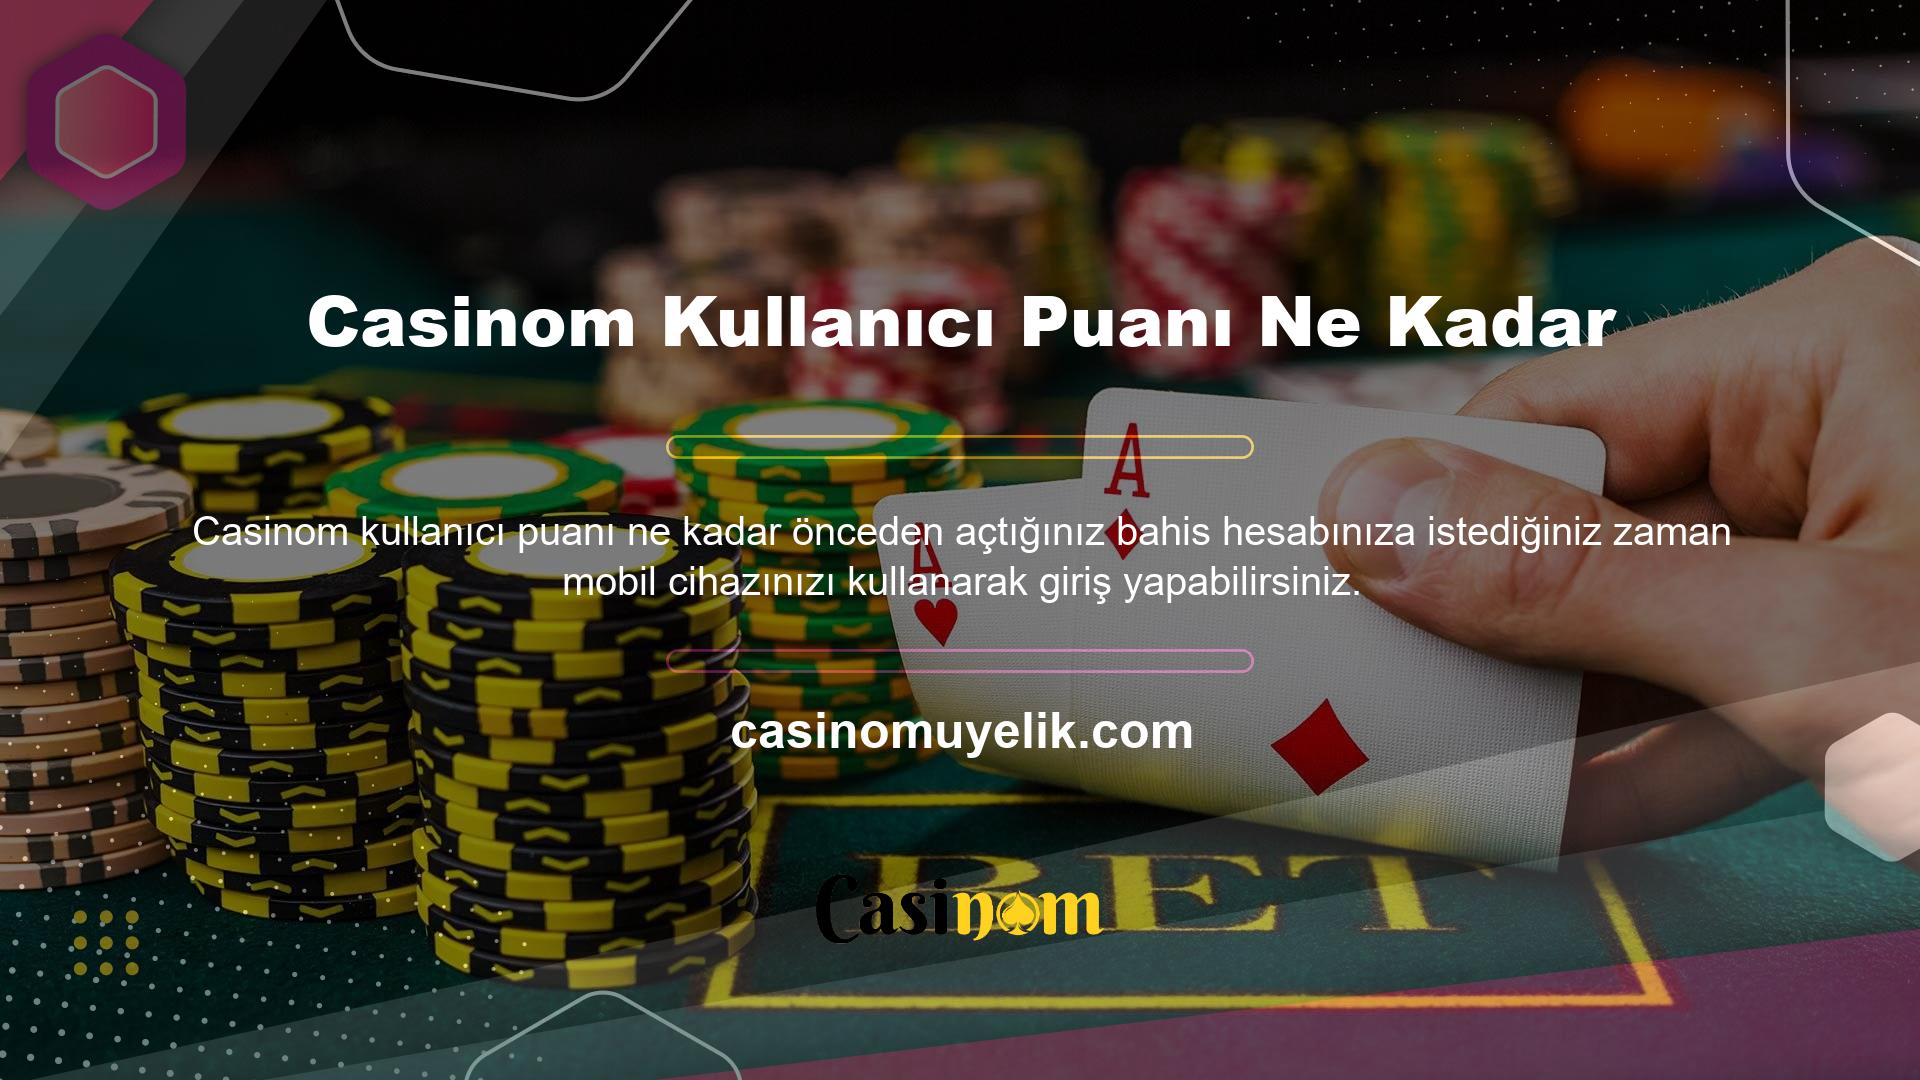 Casinom üye olmak için siteye bir kez üye olmanız yeterlidir